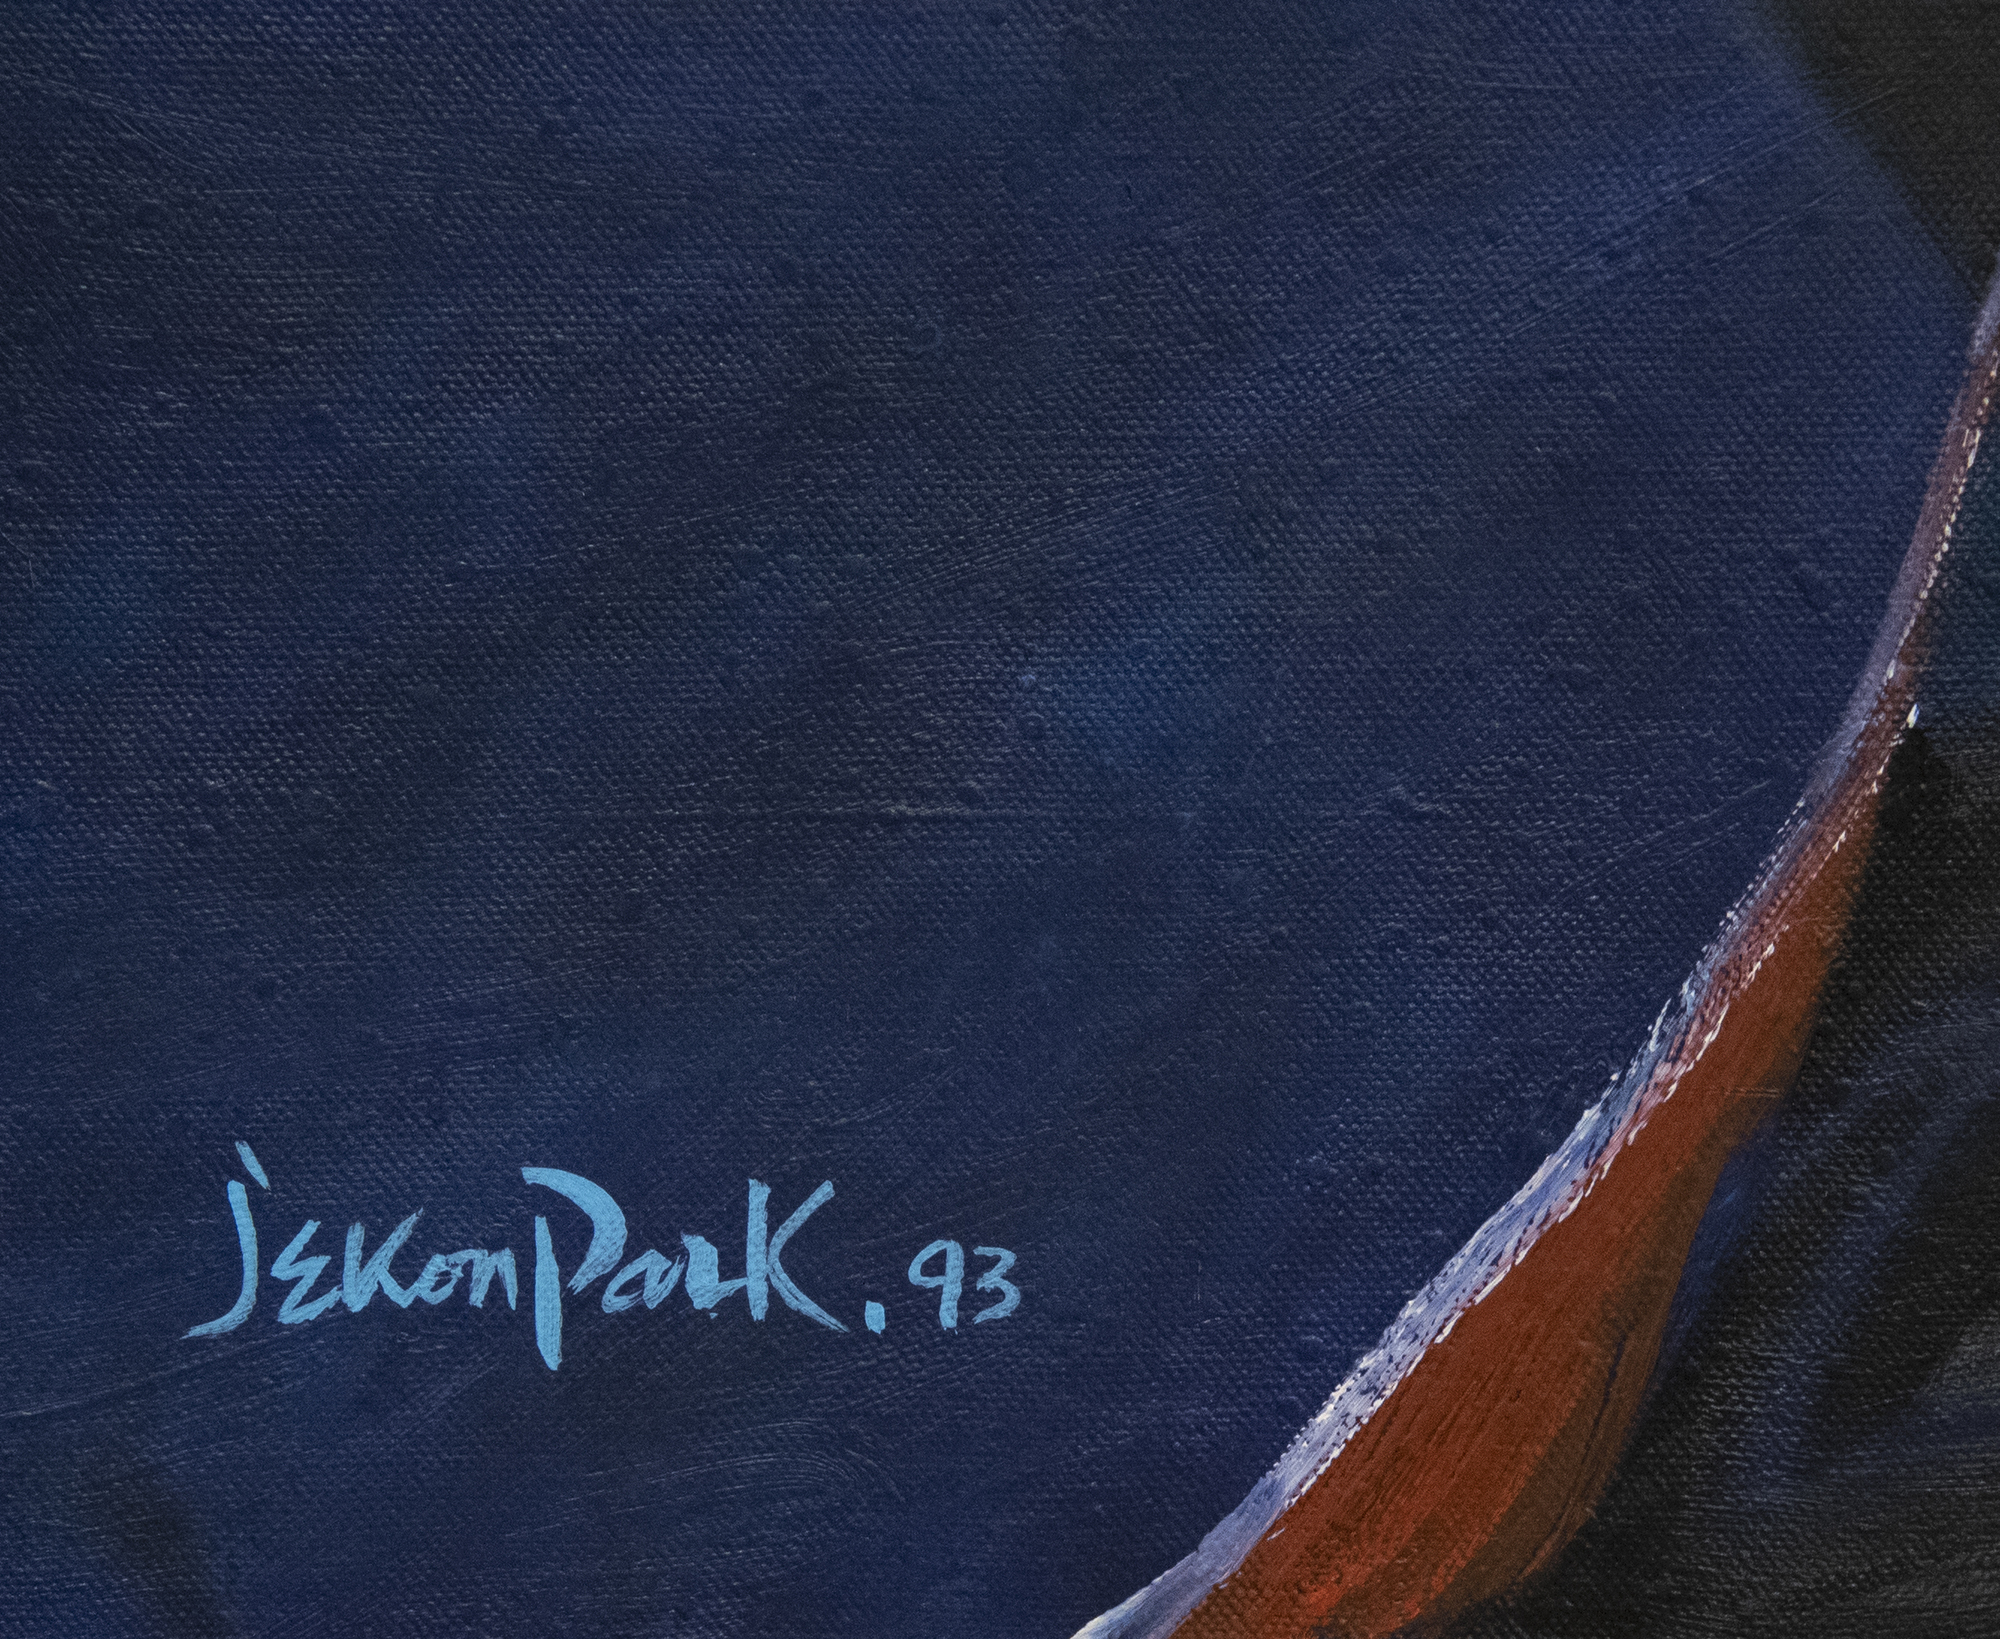 جاي كون بارك-بدون عنوان-النفط علي قماش-36 x 45 1/2 في.